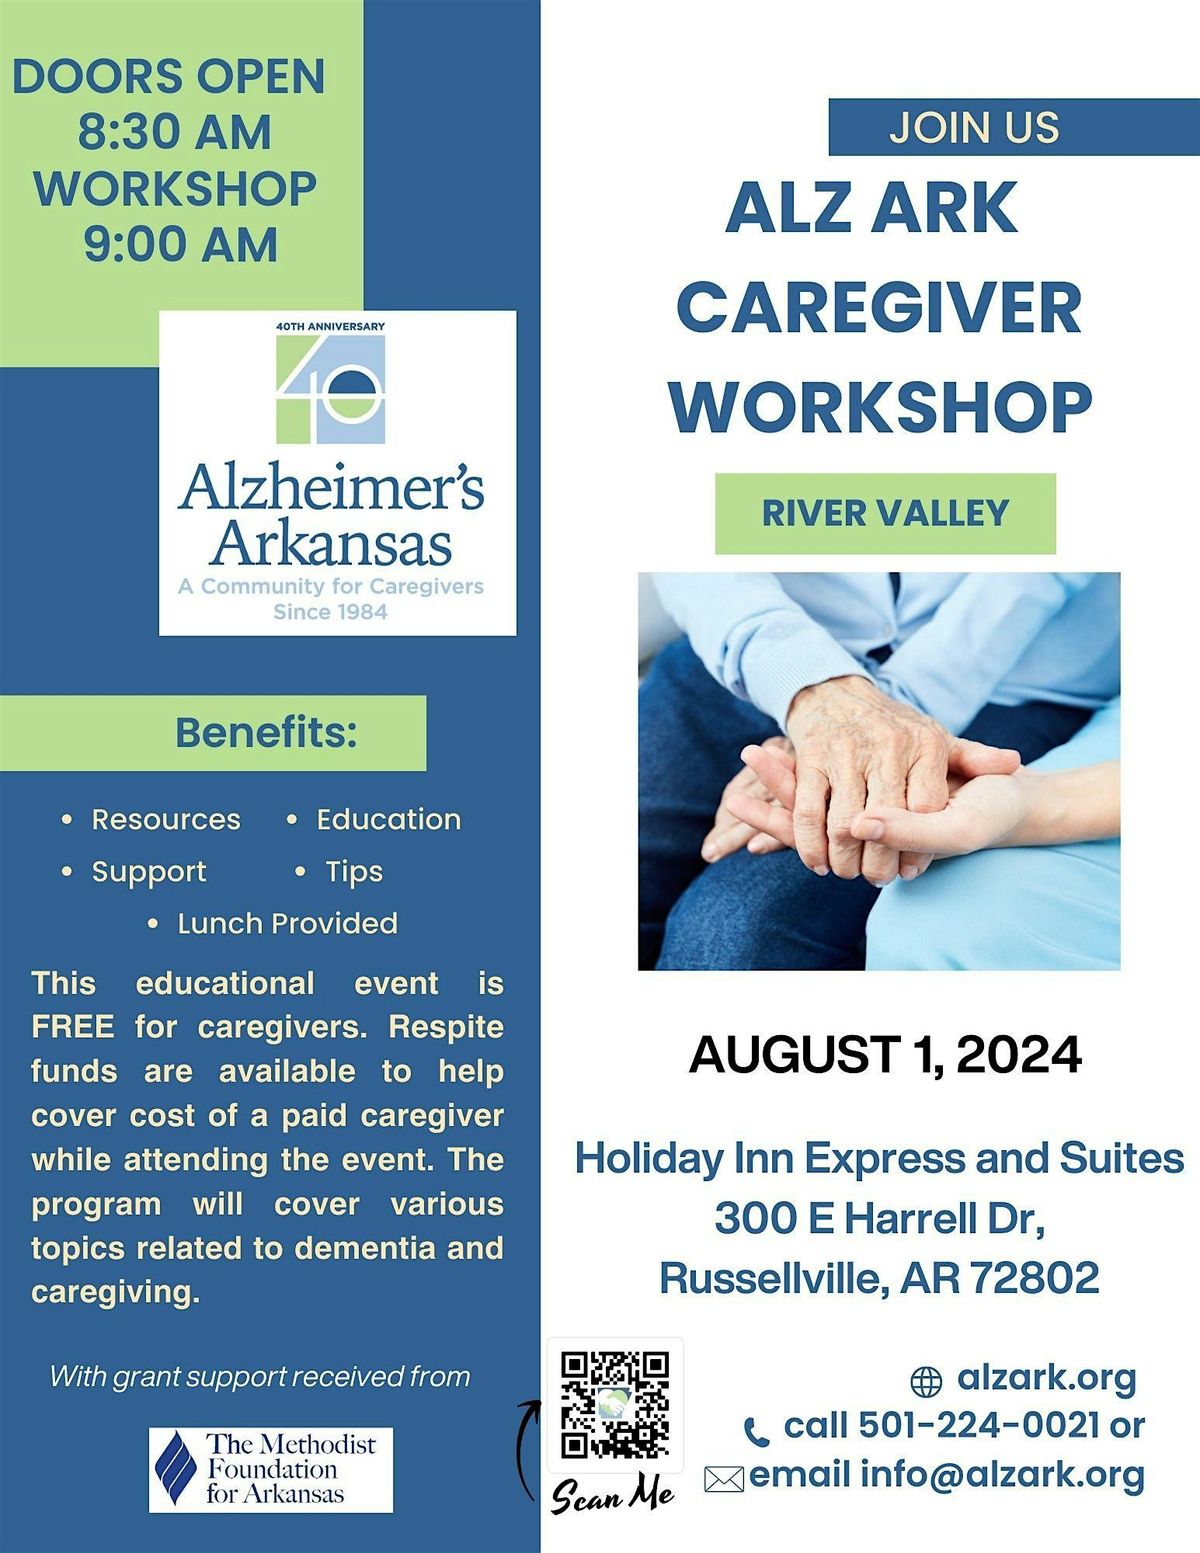 ALZARK Caregiver Workshop